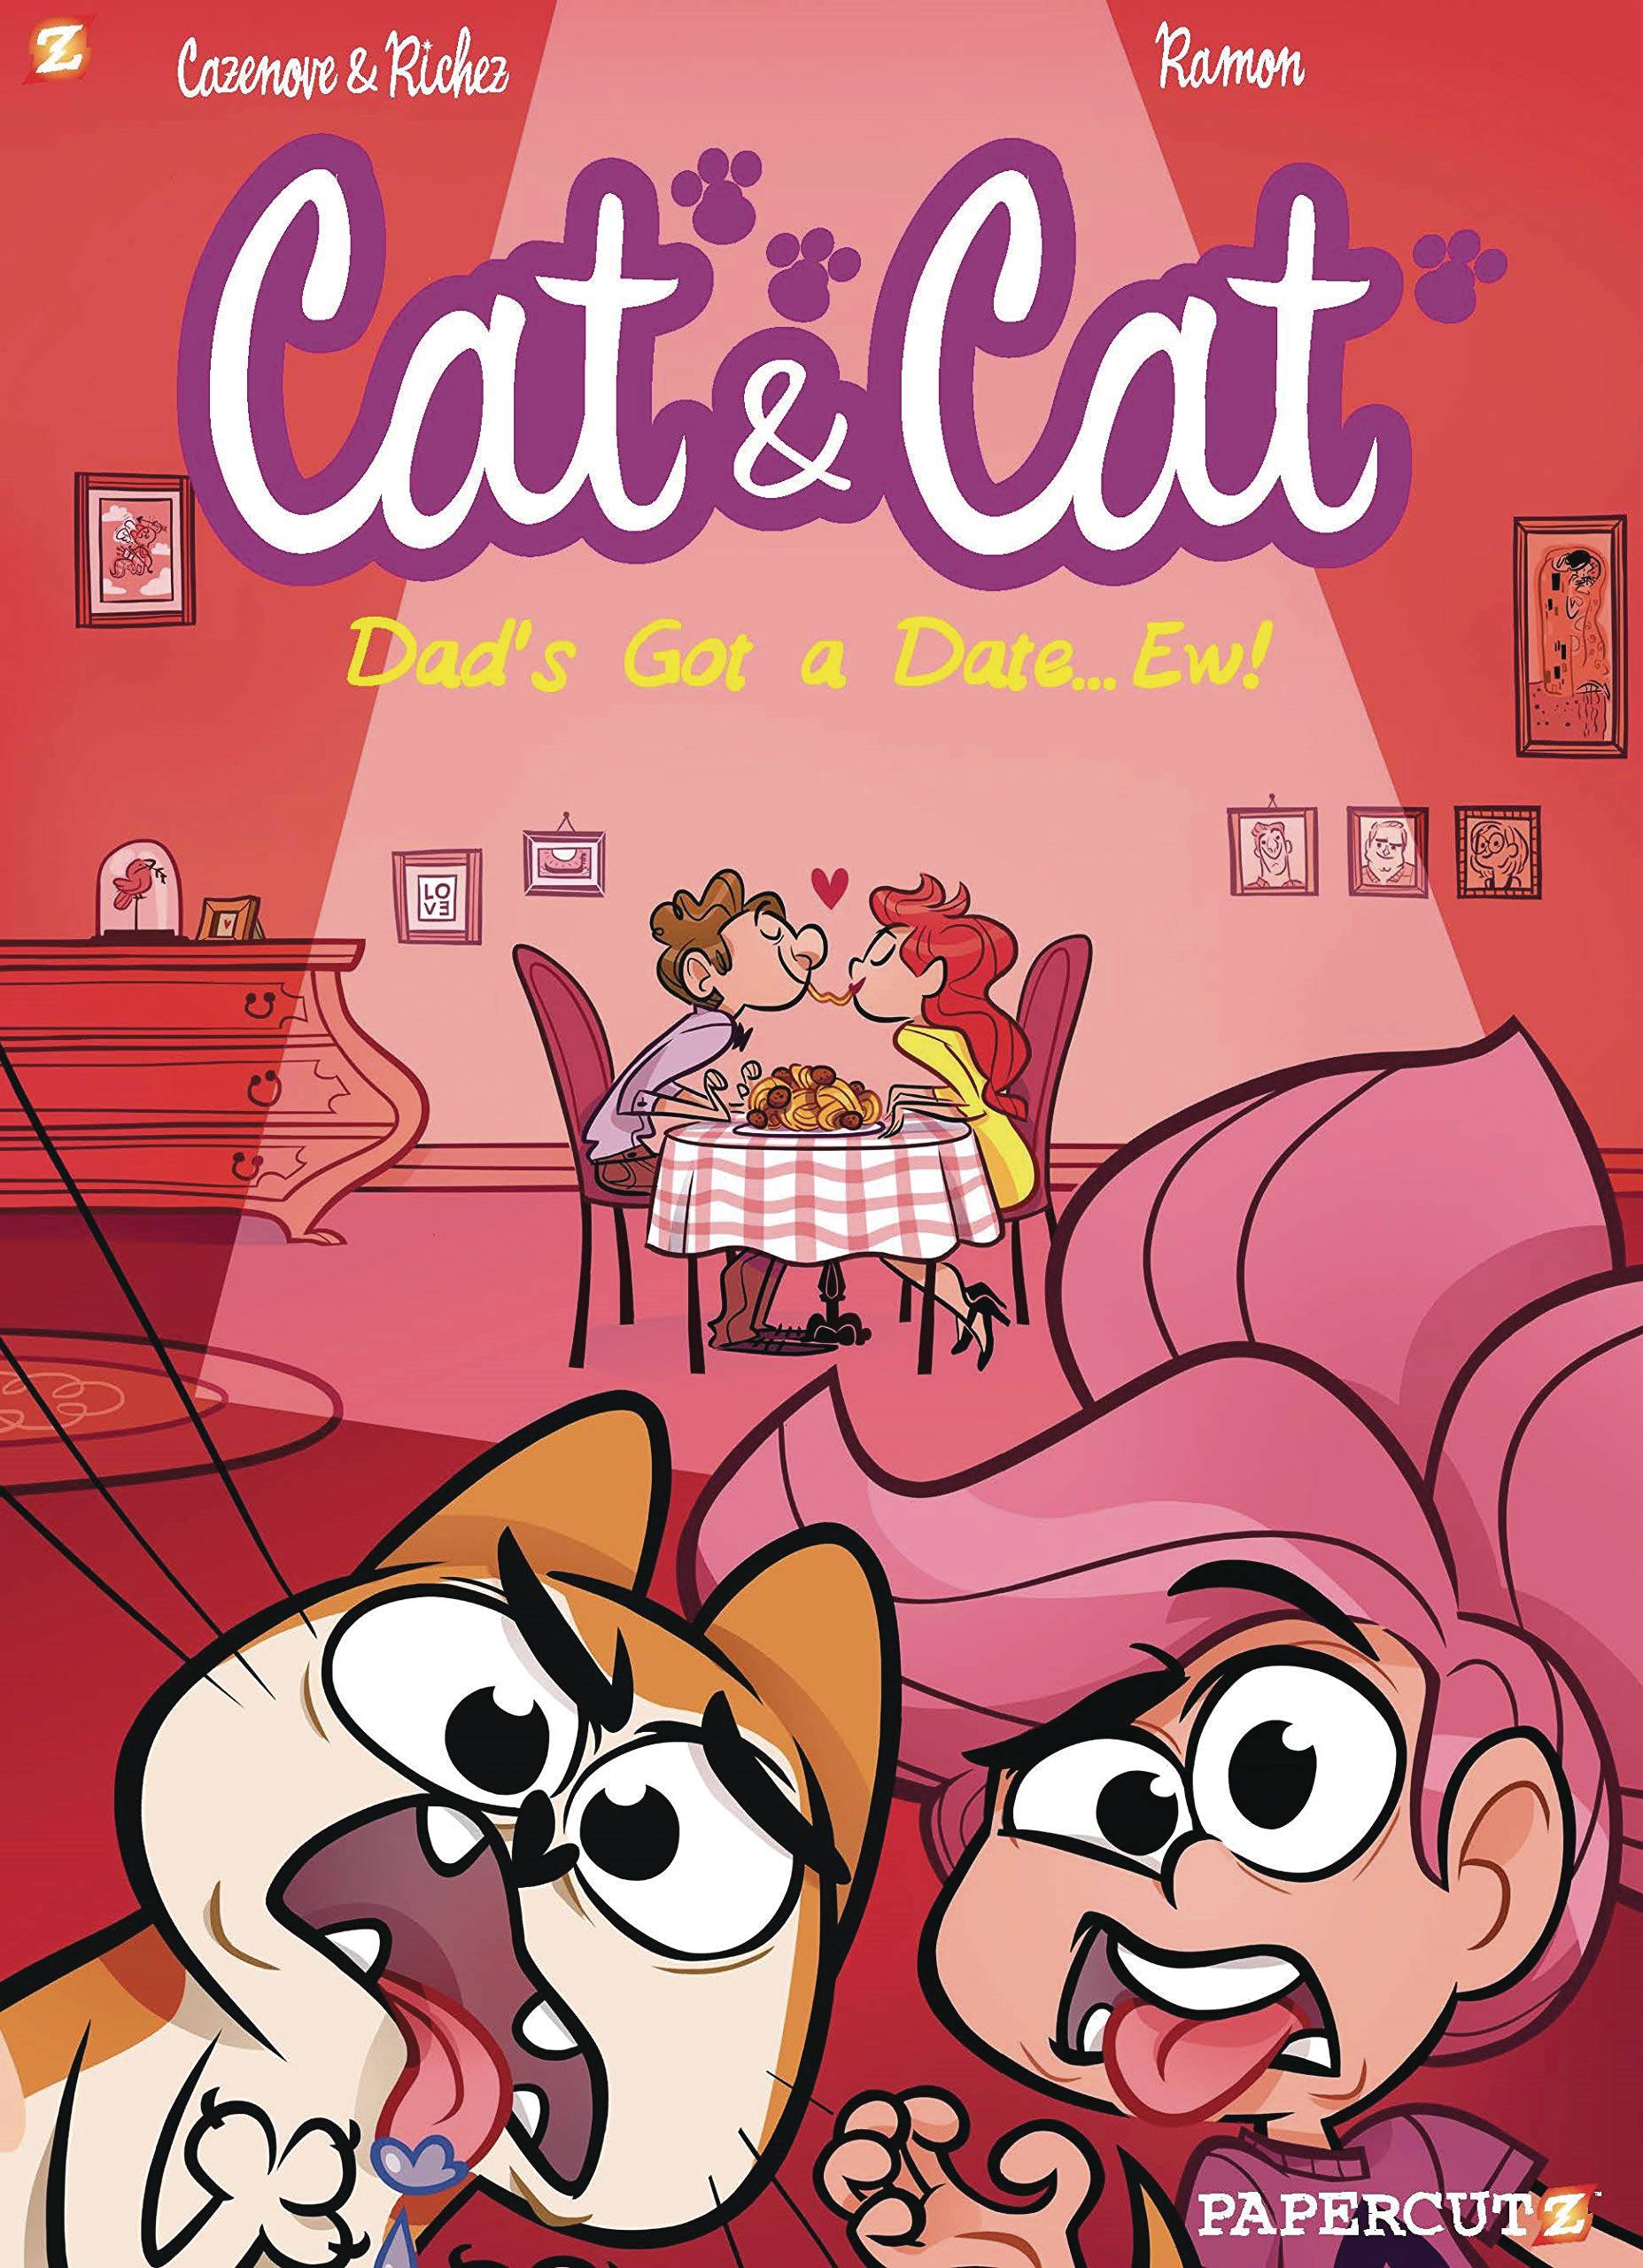 CAT & CAT HC 03 MY DADS GOT A DATE EW!